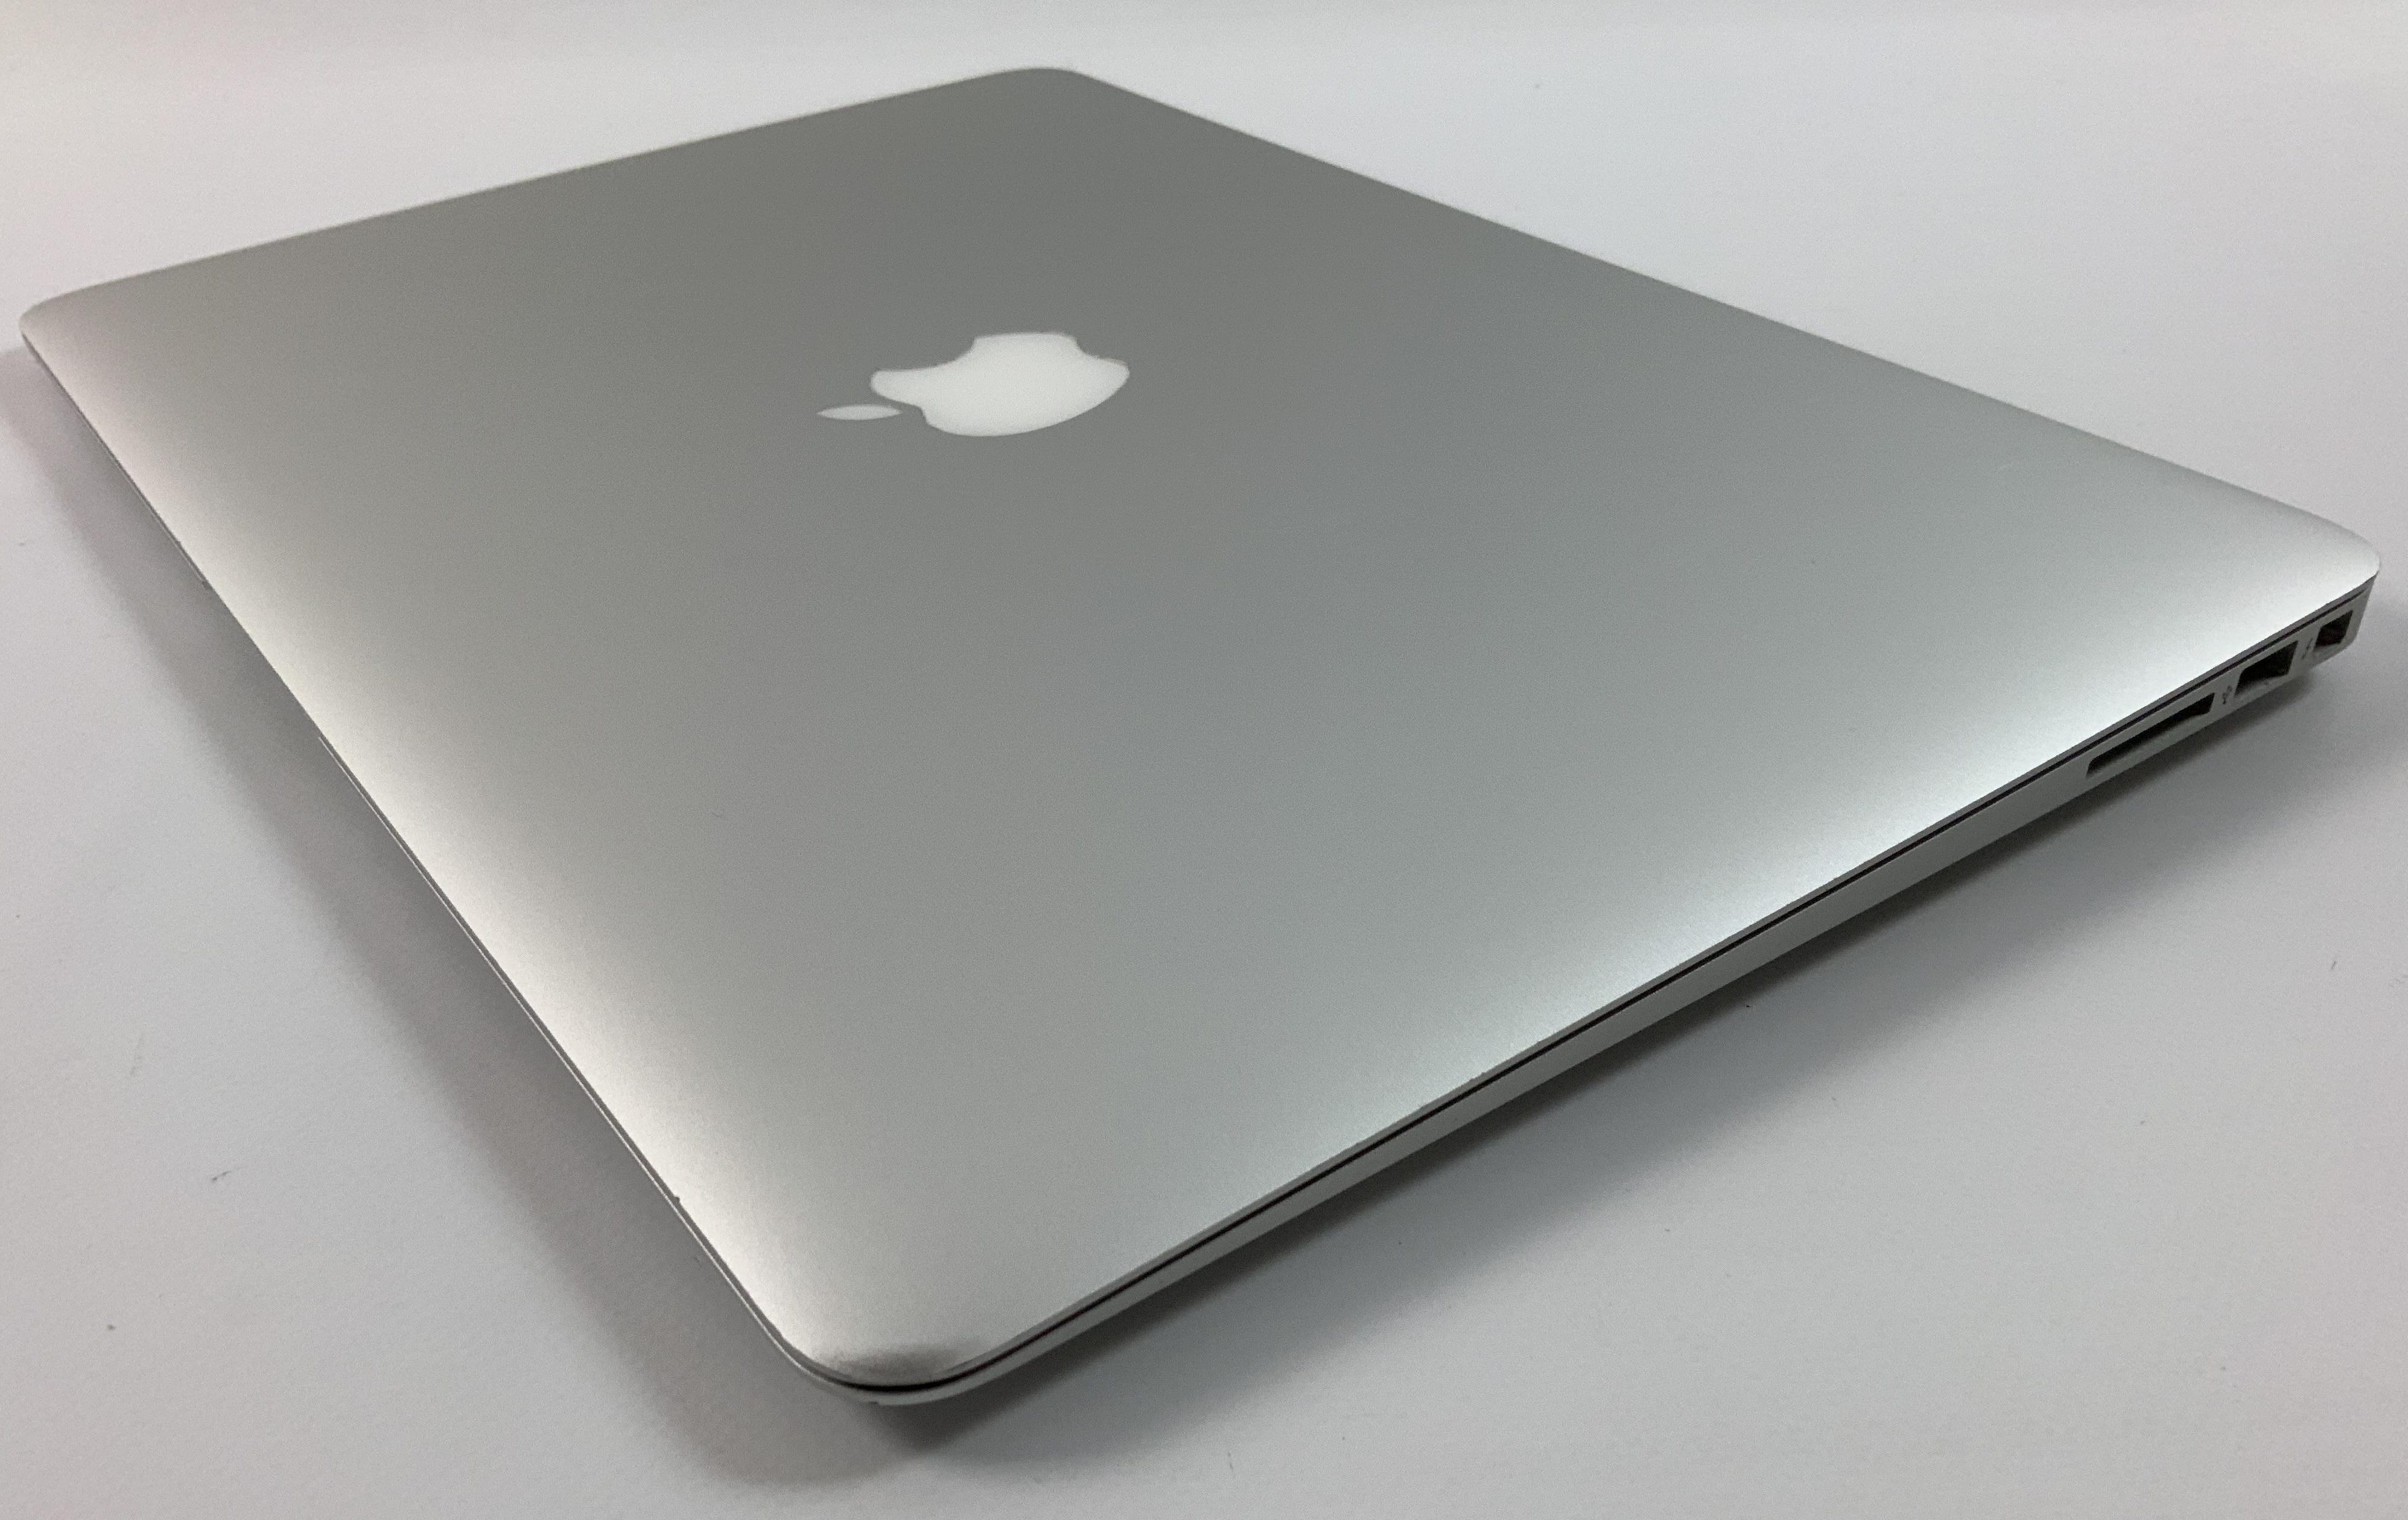 MacBook Air 13" Mid 2017 (Intel Core i5 1.8 GHz 8 GB RAM 256 GB SSD), Intel Core i5 1.8 GHz, 8 GB RAM, 256 GB SSD, Afbeelding 3